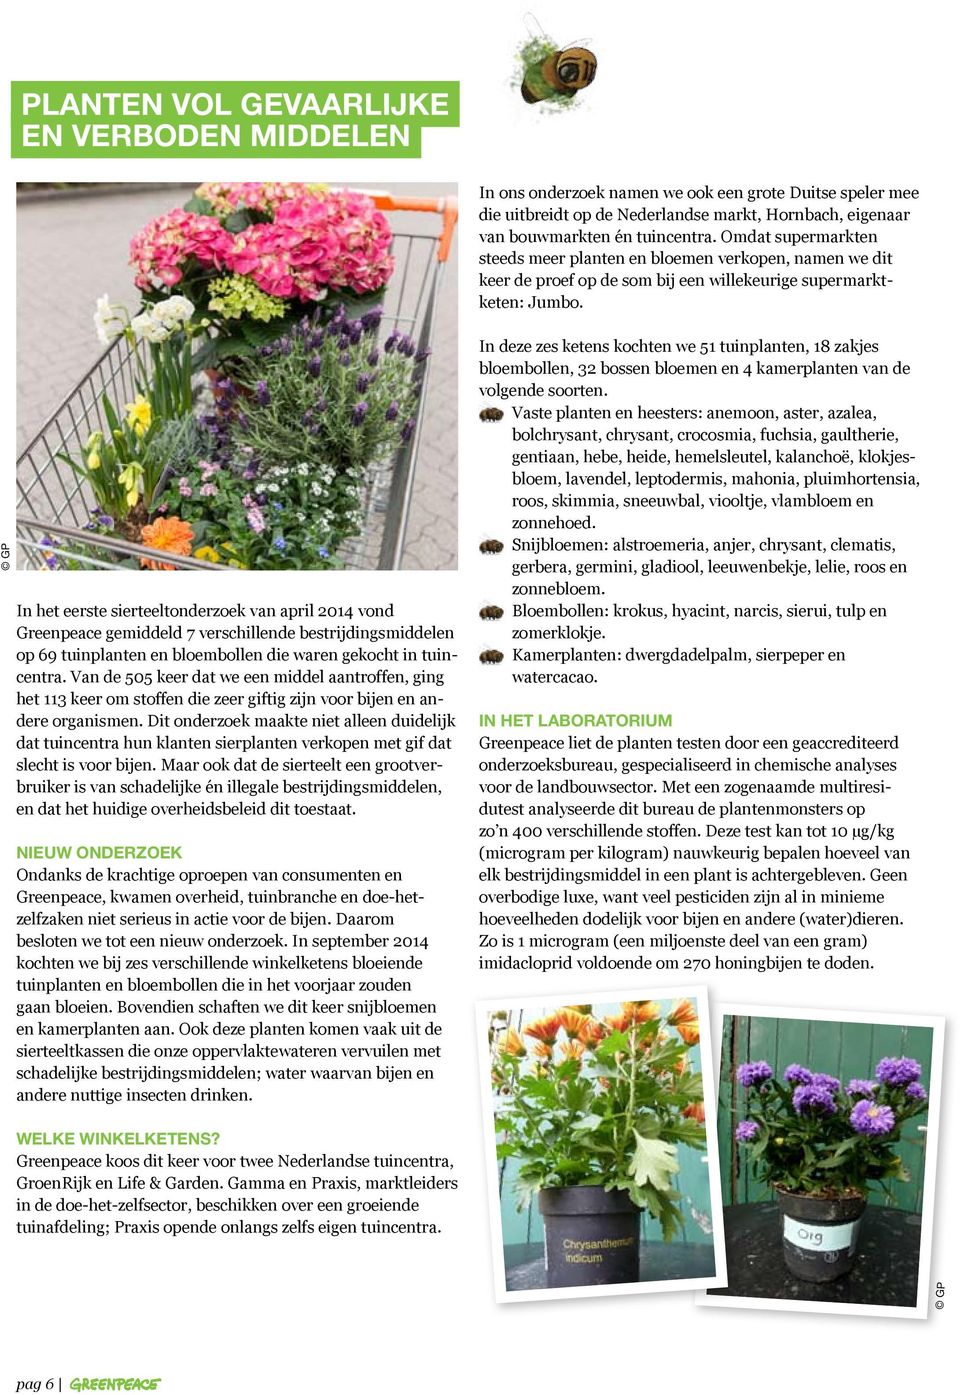 GP In het eerste sierteeltonderzoek van april 2014 vond Greenpeace gemiddeld 7 verschillende bestrijdingsmiddelen op 69 tuinplanten en bloembollen die waren gekocht in tuincentra.